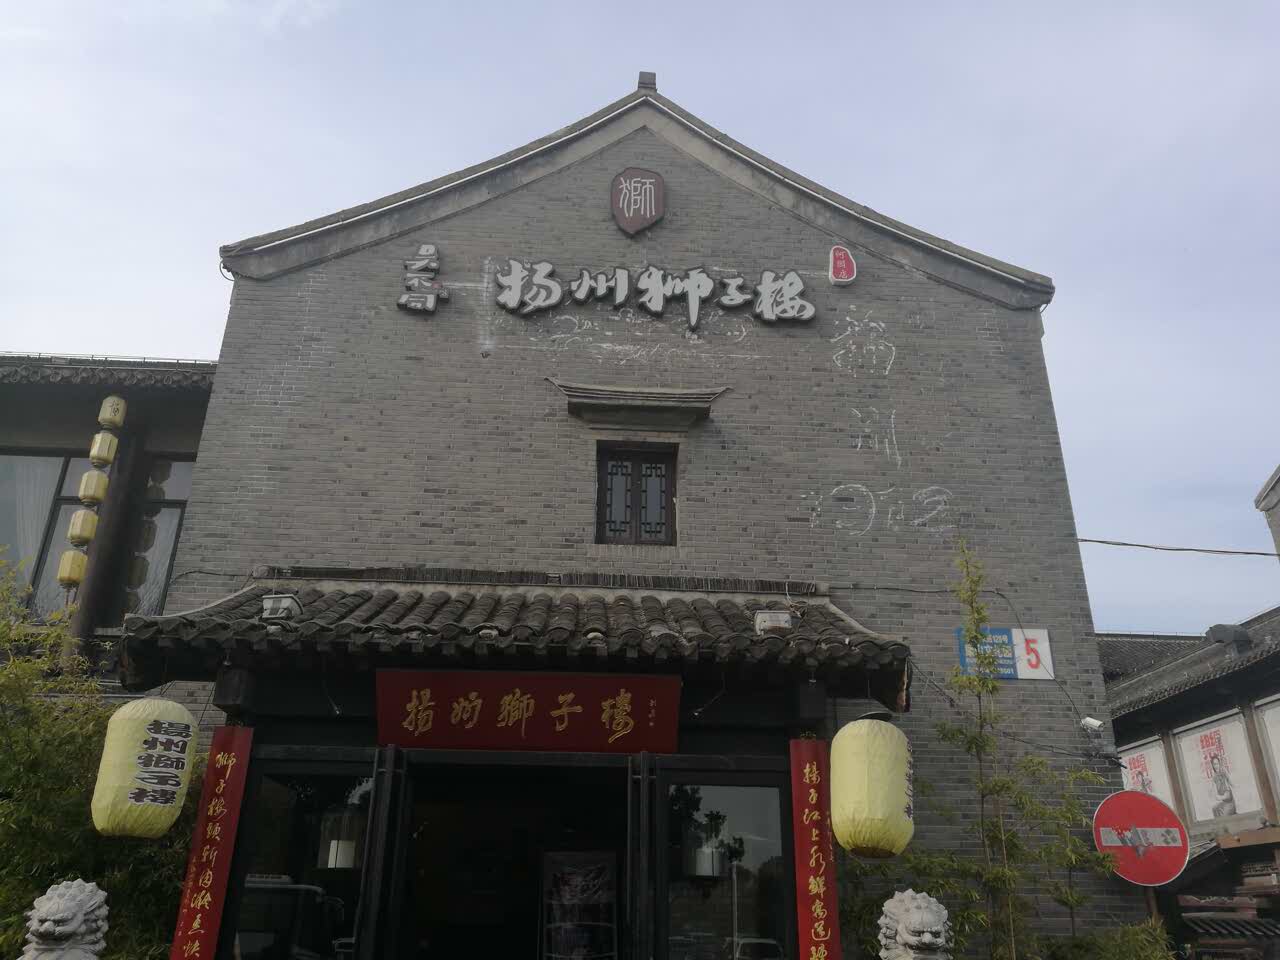 2021淮食·扬州狮子楼(何园店)美食餐厅,第一天晚上没有拿到号,第二